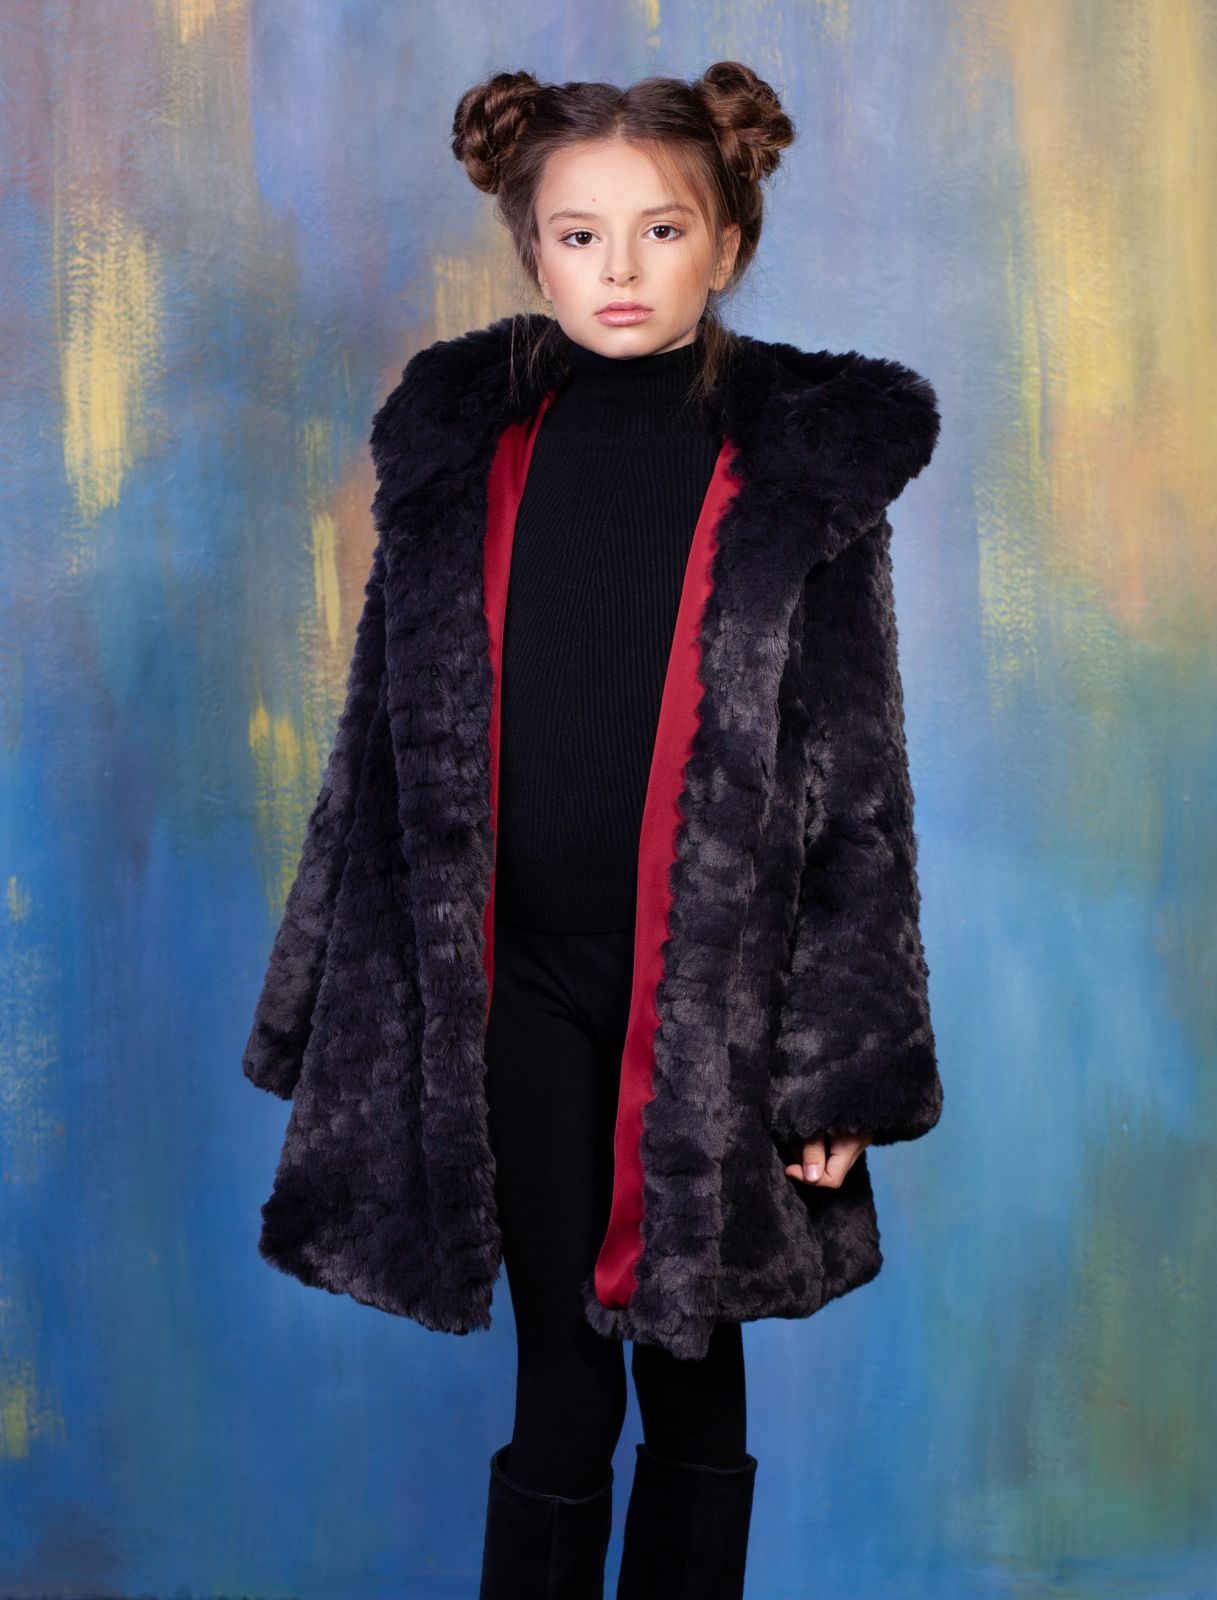 Photo #2 - Kids coat eco fur Tissavel - chinchilla knitted graphite